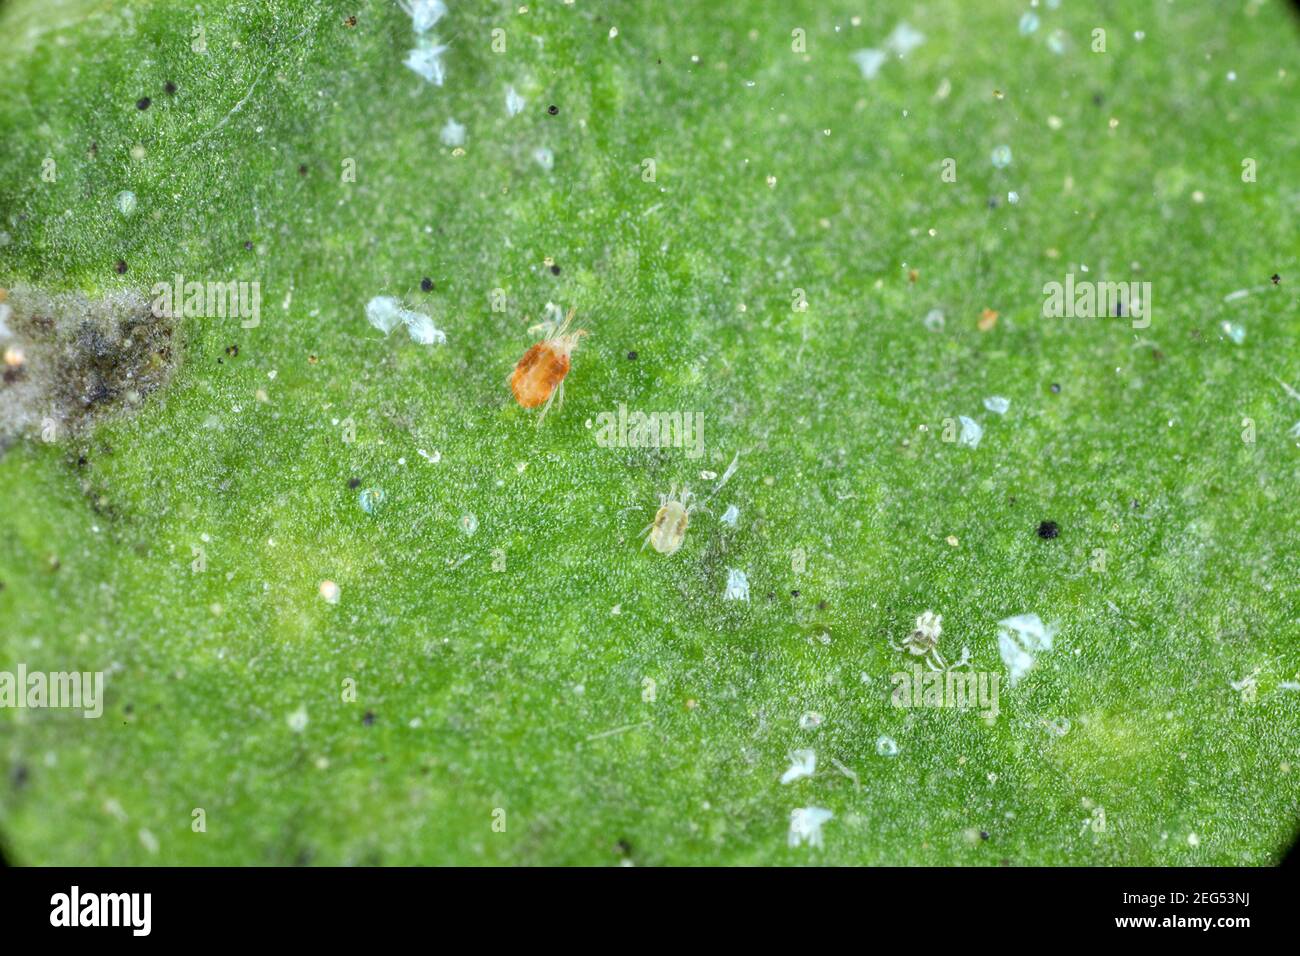 Primer plano de una masa de ácaros de la araña roja (Tetranychus urticae) en la hoja. Exudviae visible, huevos, heces, telarañas y células vegetales dañadas. Foto de stock